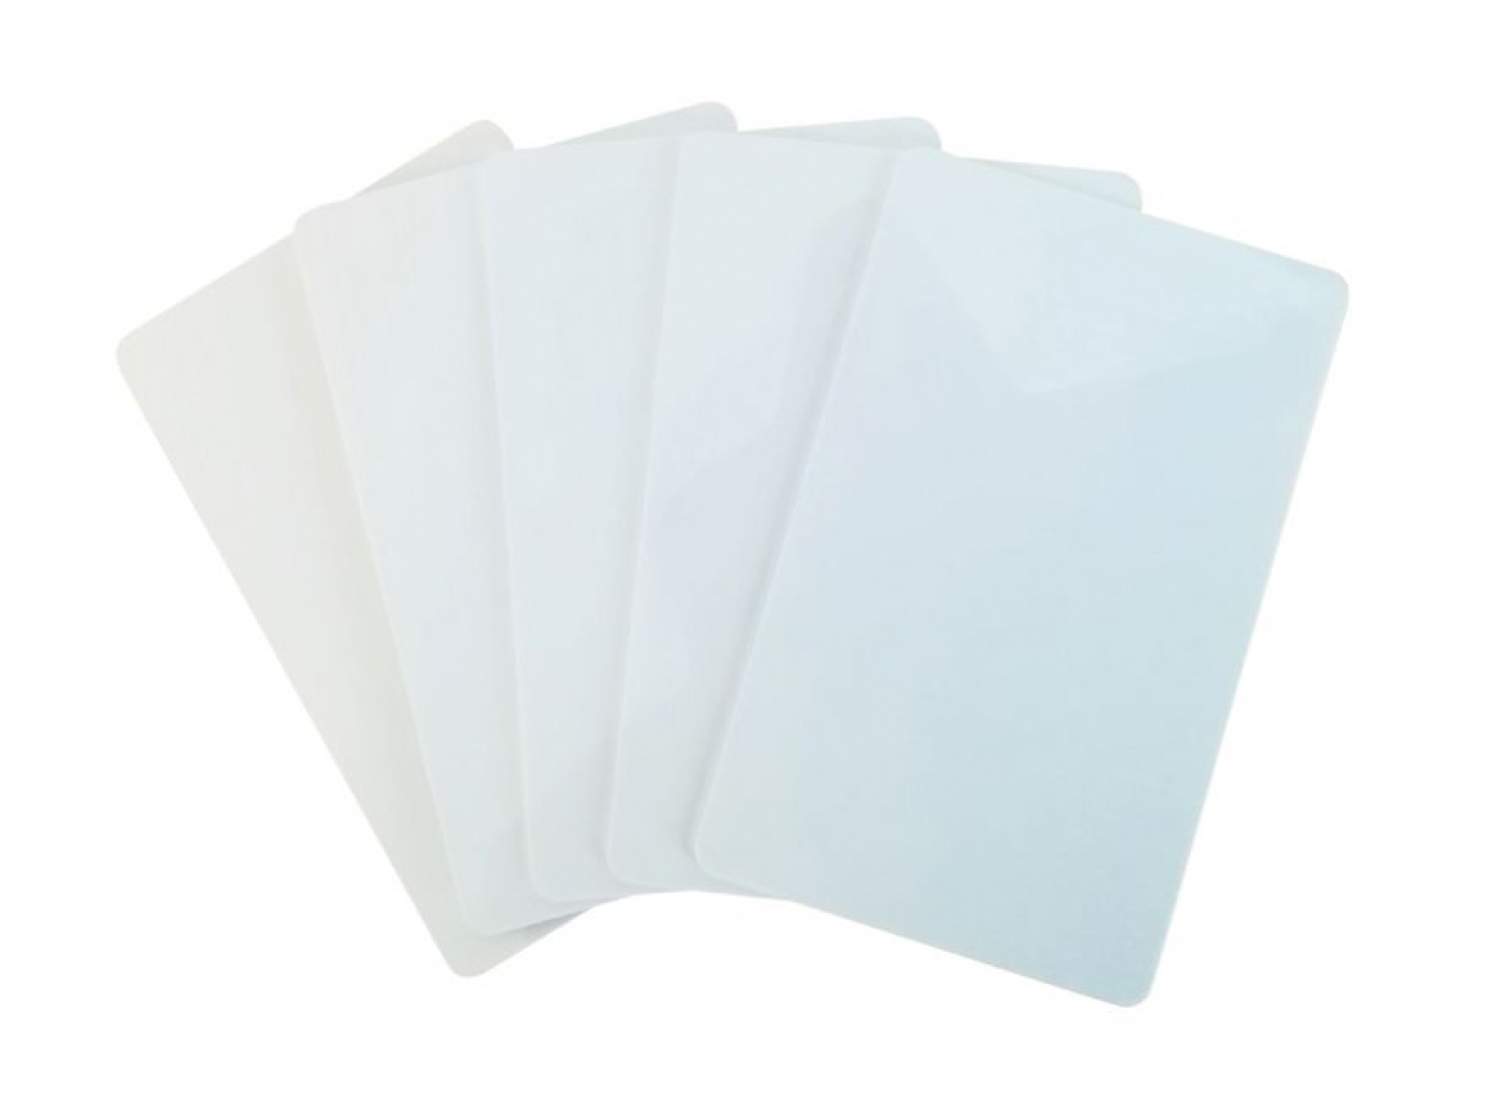 Premium Plastikkarten Blanko Rohlinge PVC Karten GOLD WEICH 1-100 St/ück NEU! 50